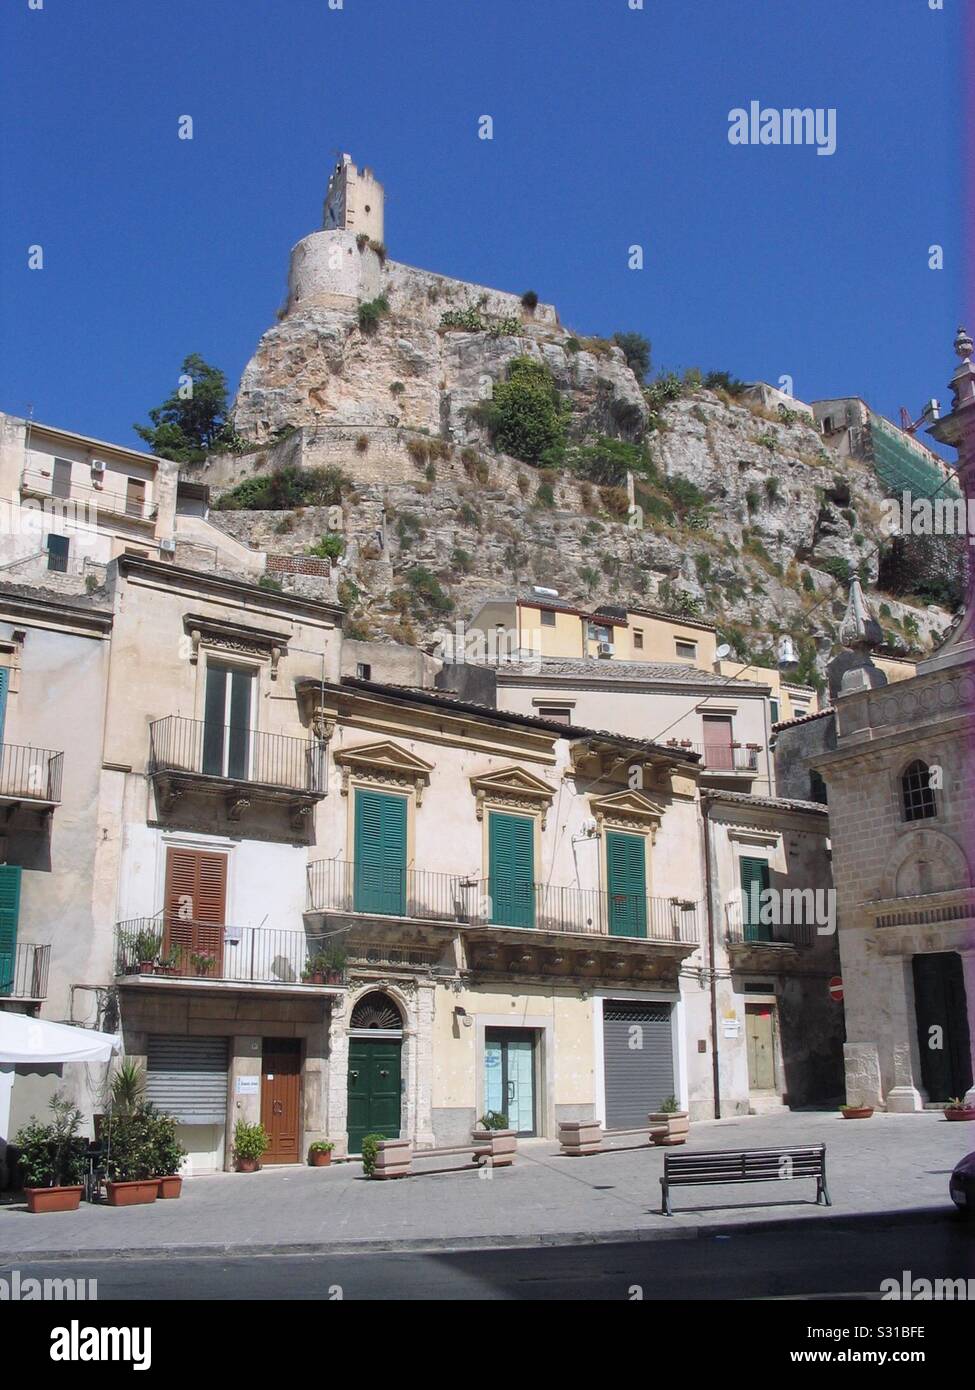 Fortificata medioevale edificio su una scogliera al di sopra di una cittadina siciliana Foto Stock